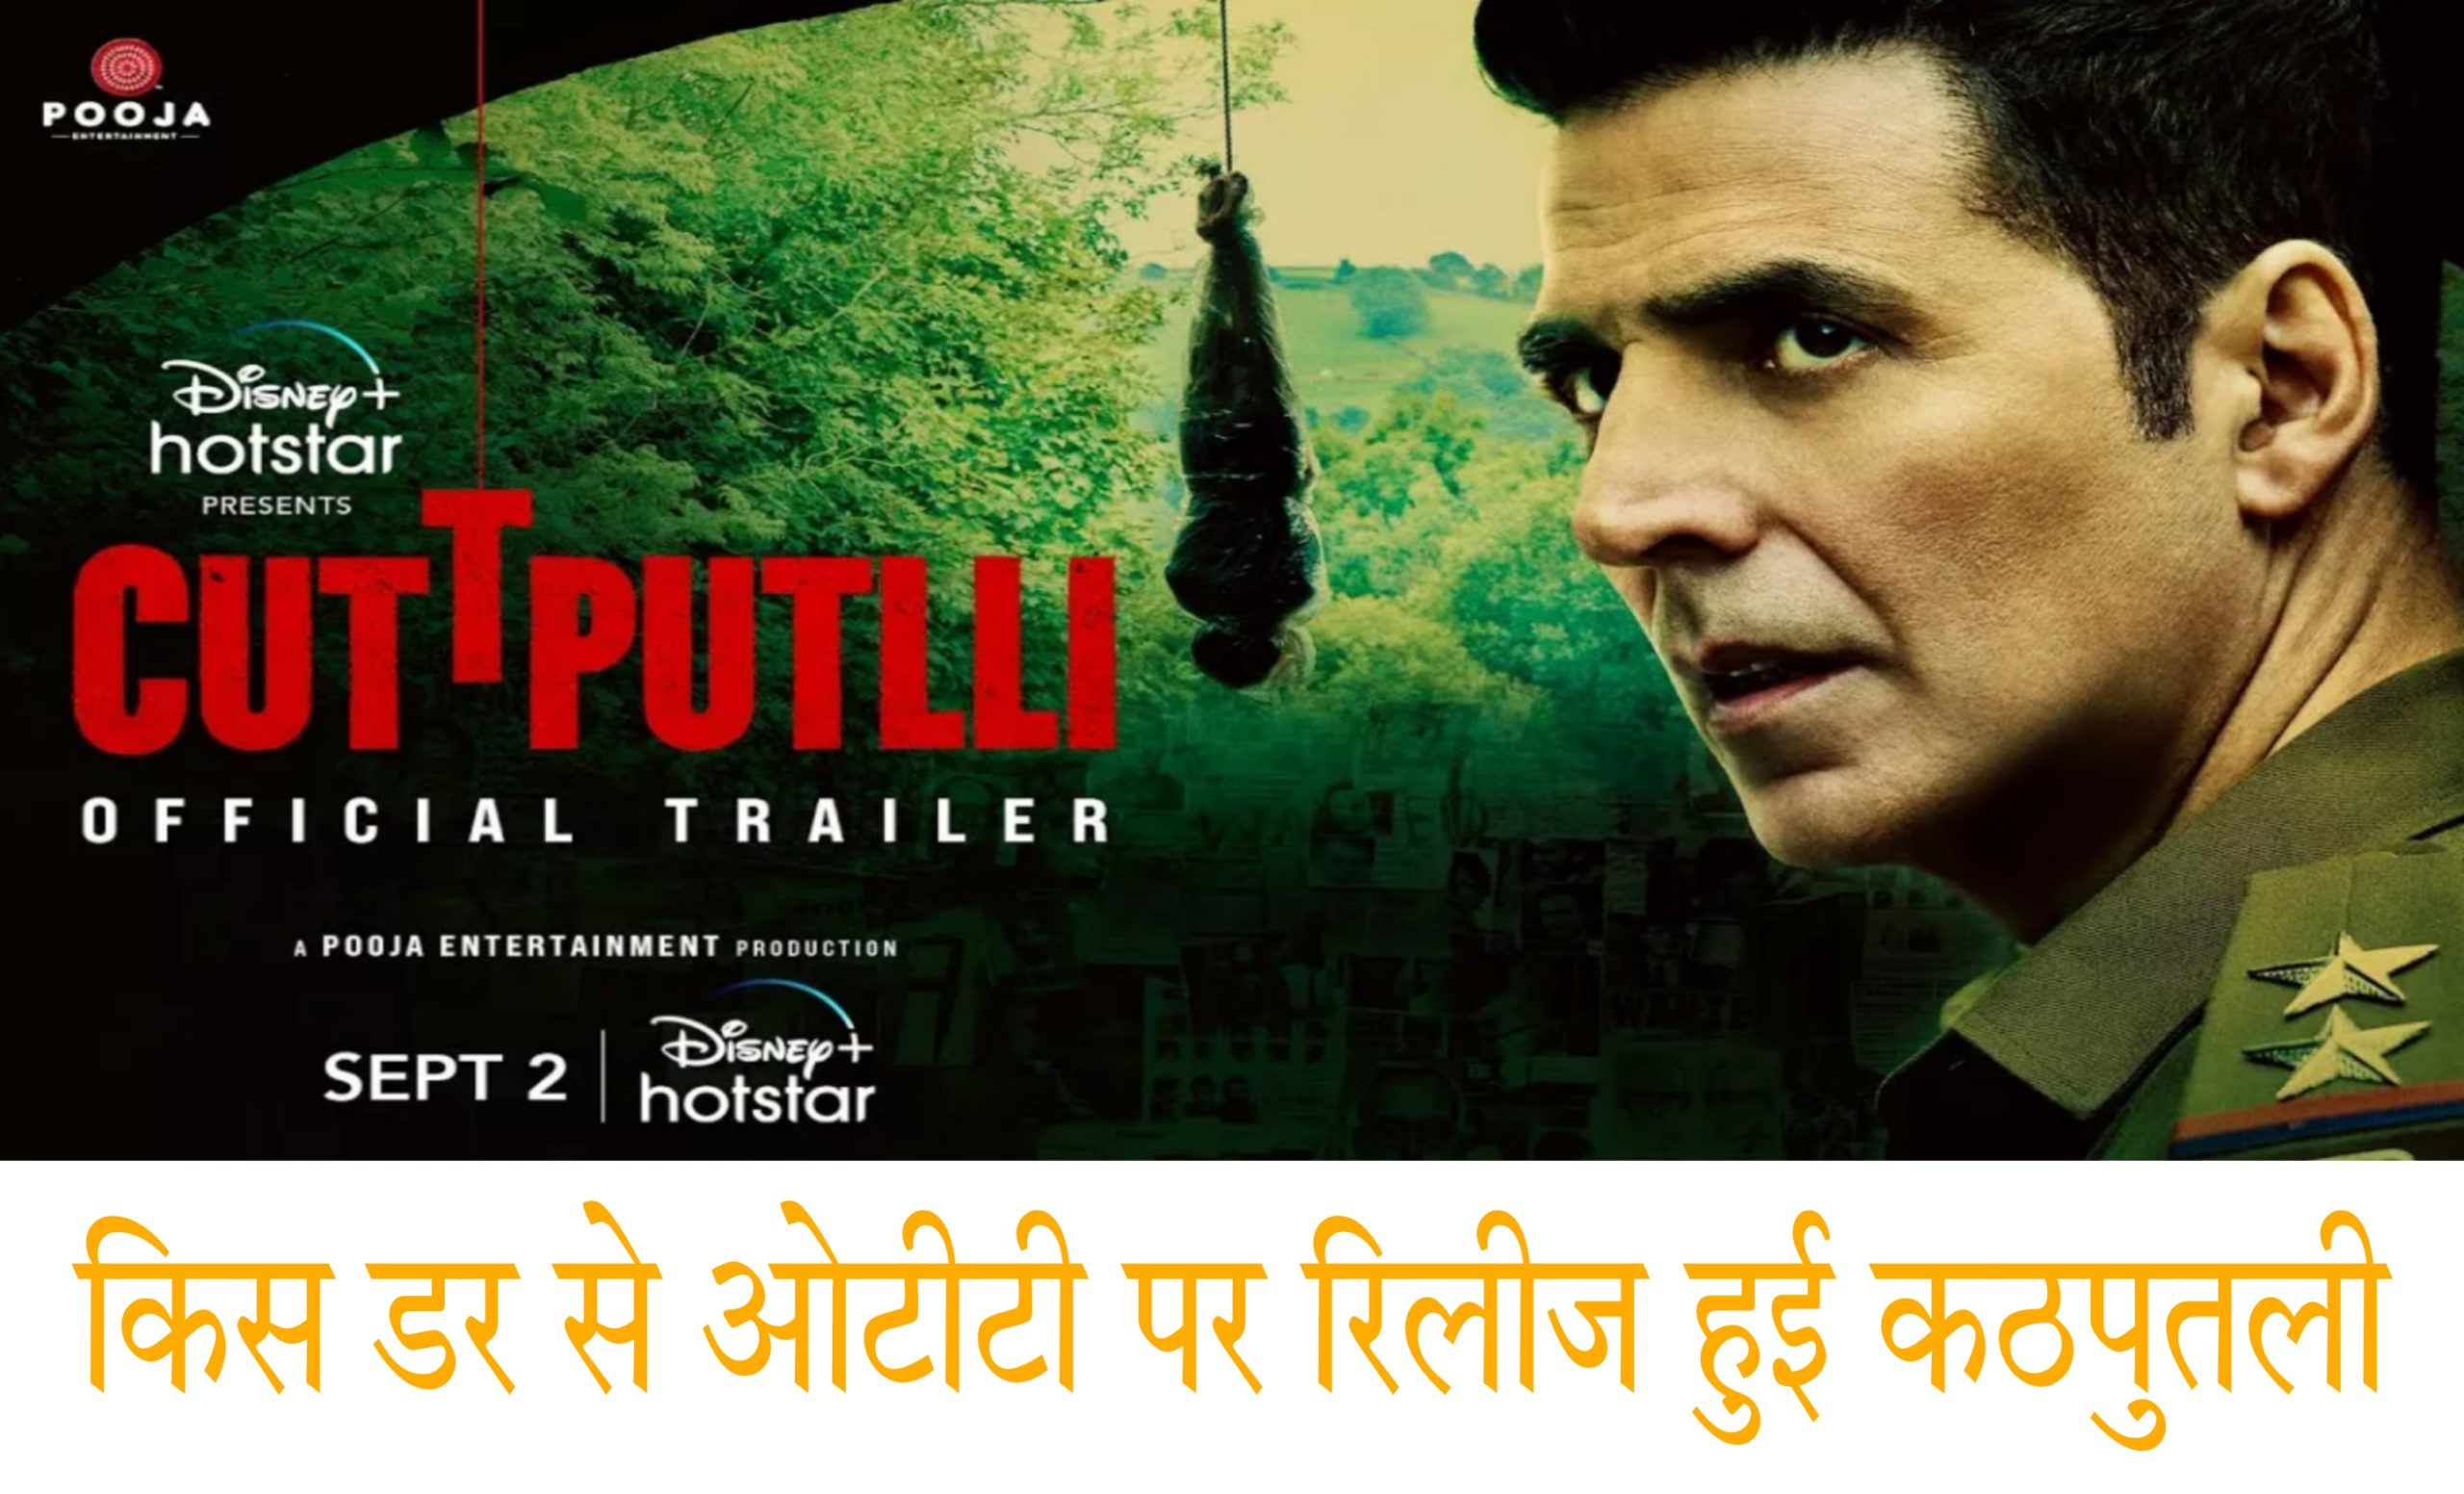 अक्षय कुमार की फिल्म कठपुतली की समीक्षा | Cuttputlli Movie Review In Hindi Akshay Kumar